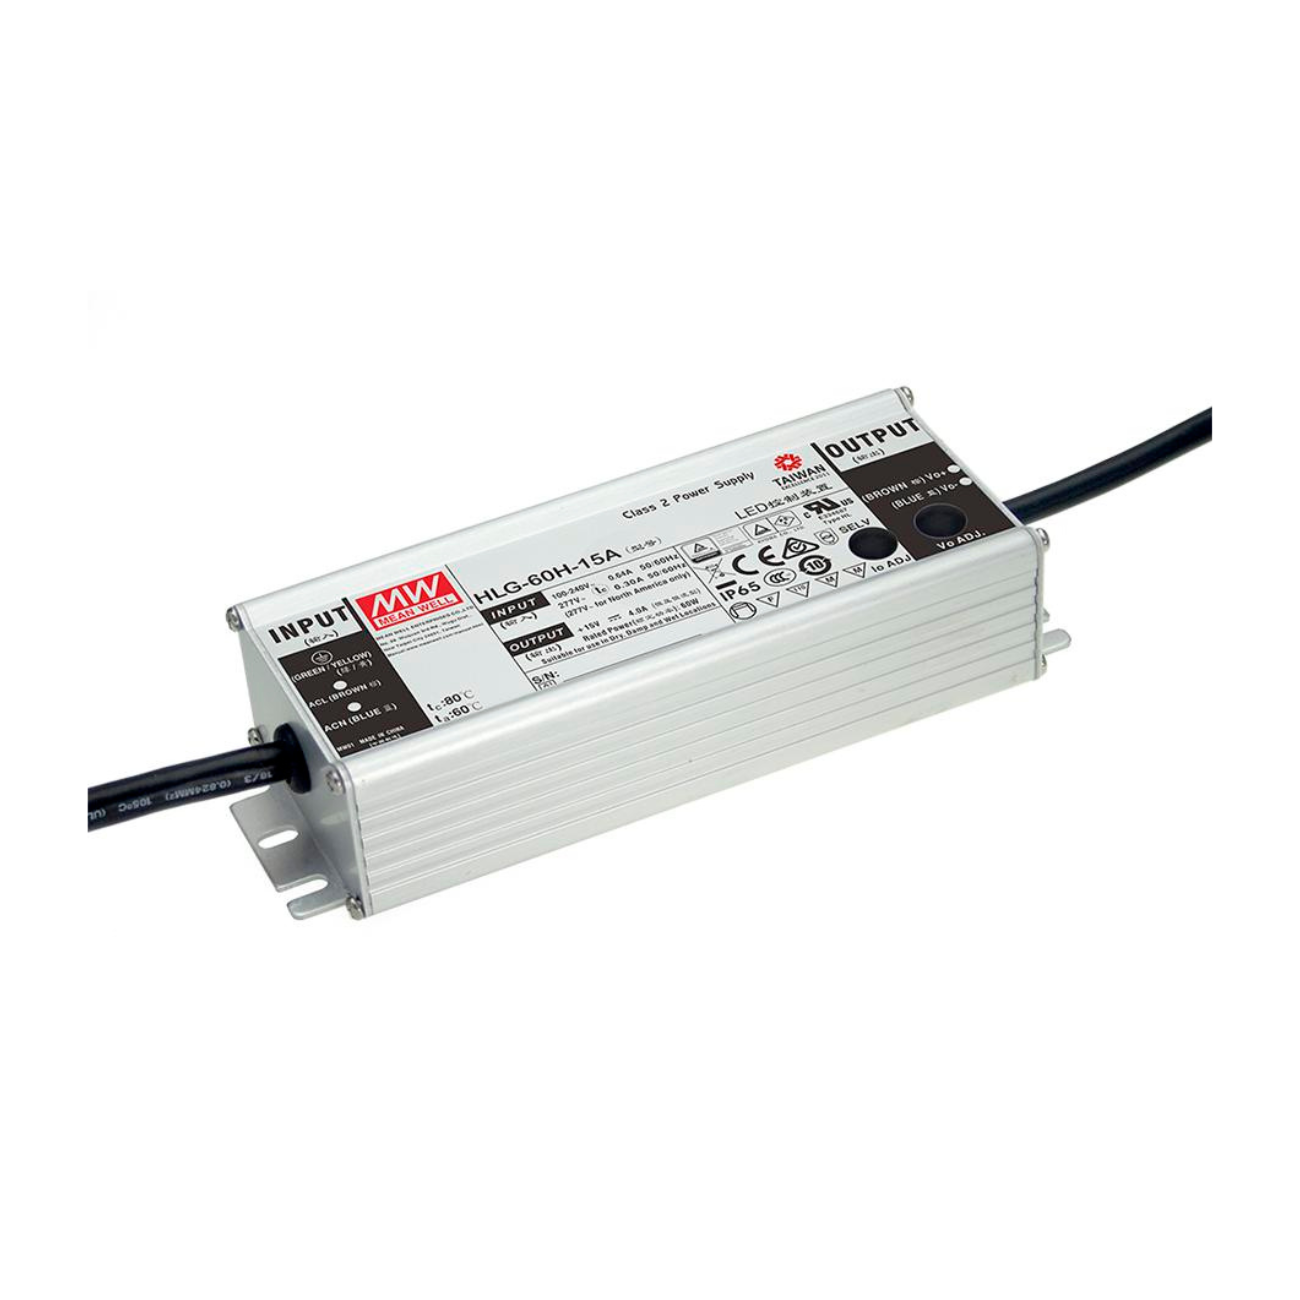 MeanWell HLG-60H-48 (62,4W/48V) LED-Netzteil